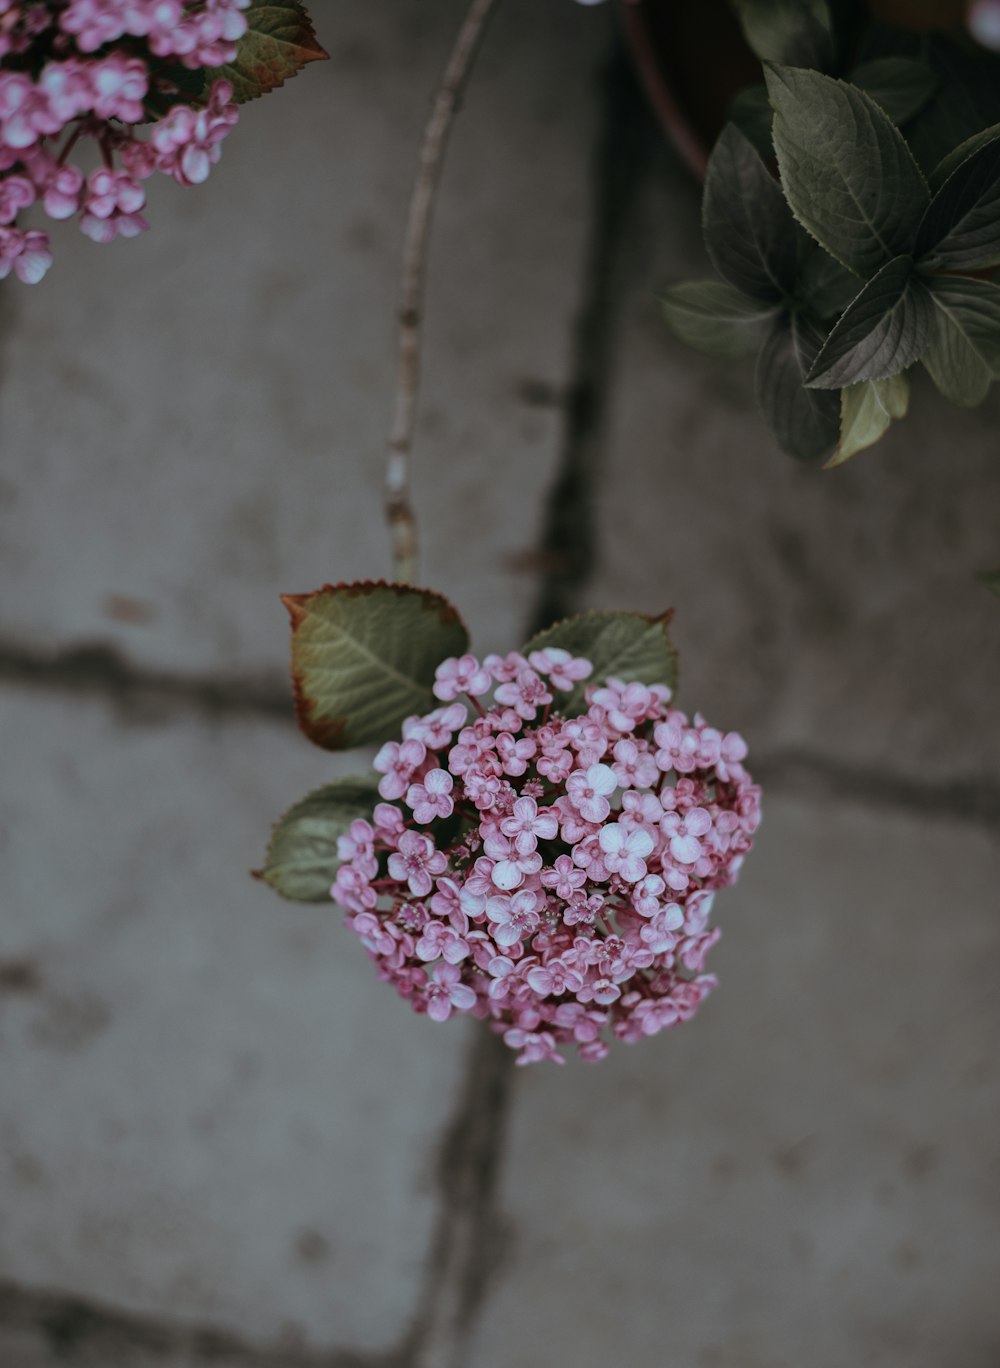 분홍색 꽃잎이 달린 꽃의 근접 촬영 사진